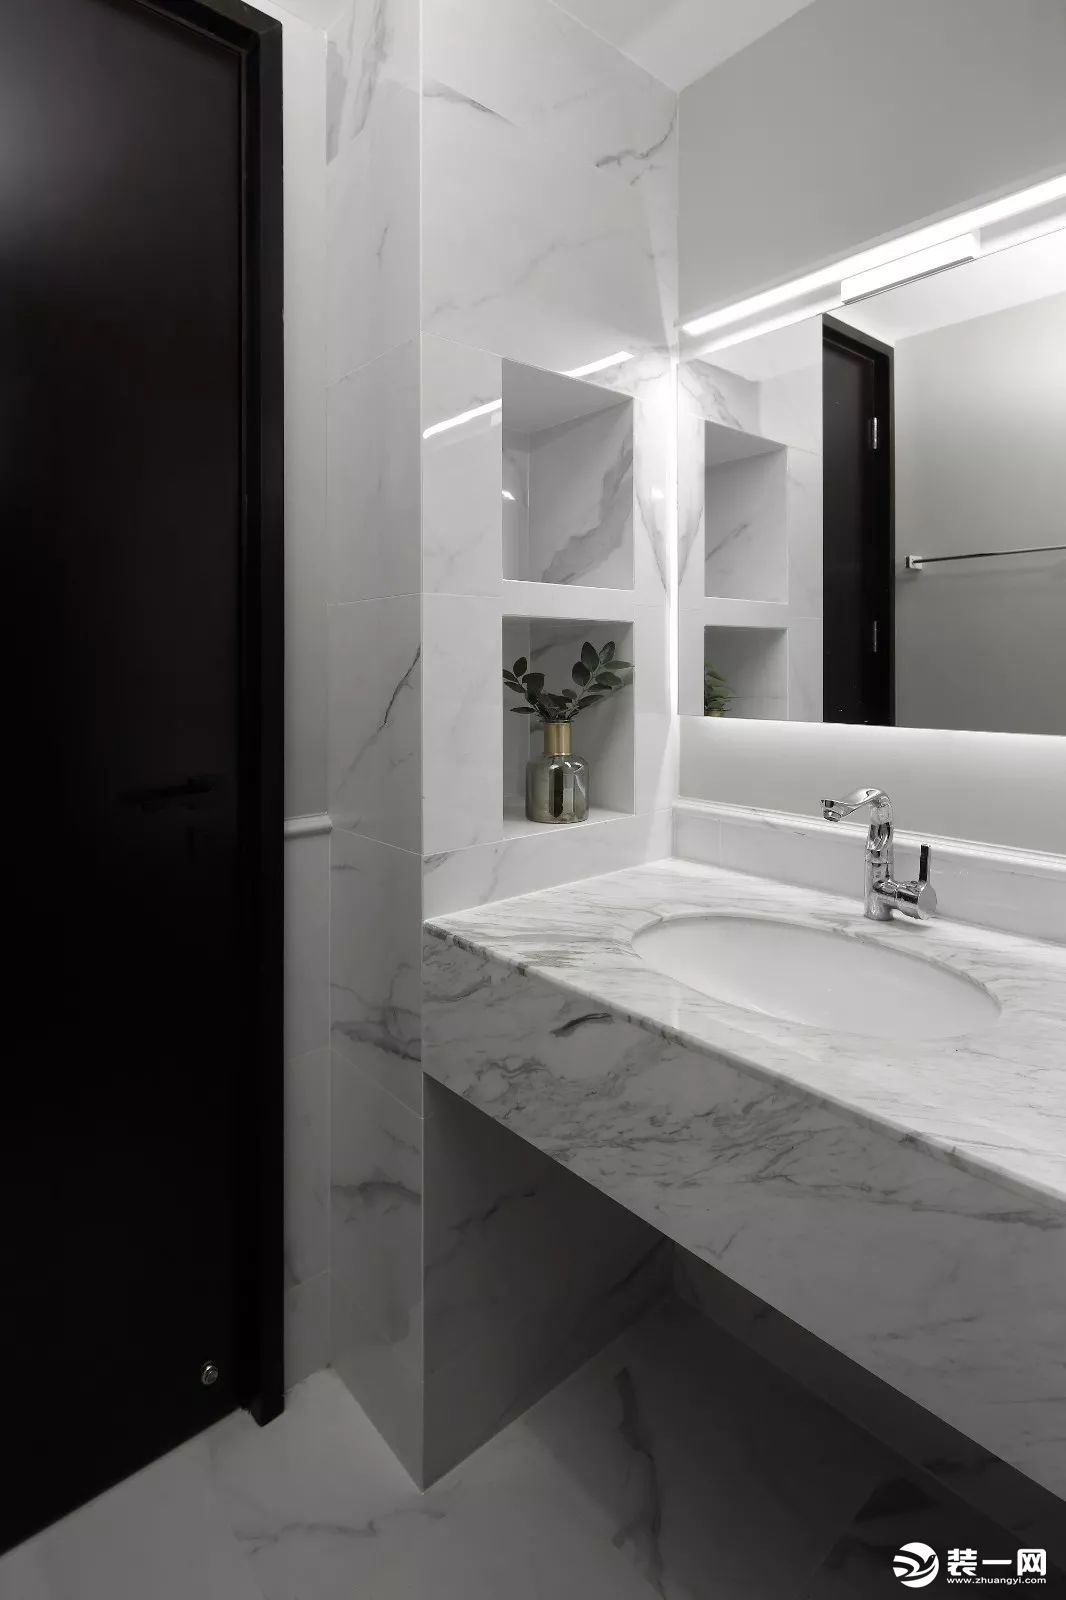 卫生间内部是选择了更为明亮、大气的爵士白大理石瓷砖，在浴室镜的上方安装一条灯带，让卫生间看起来更加宽